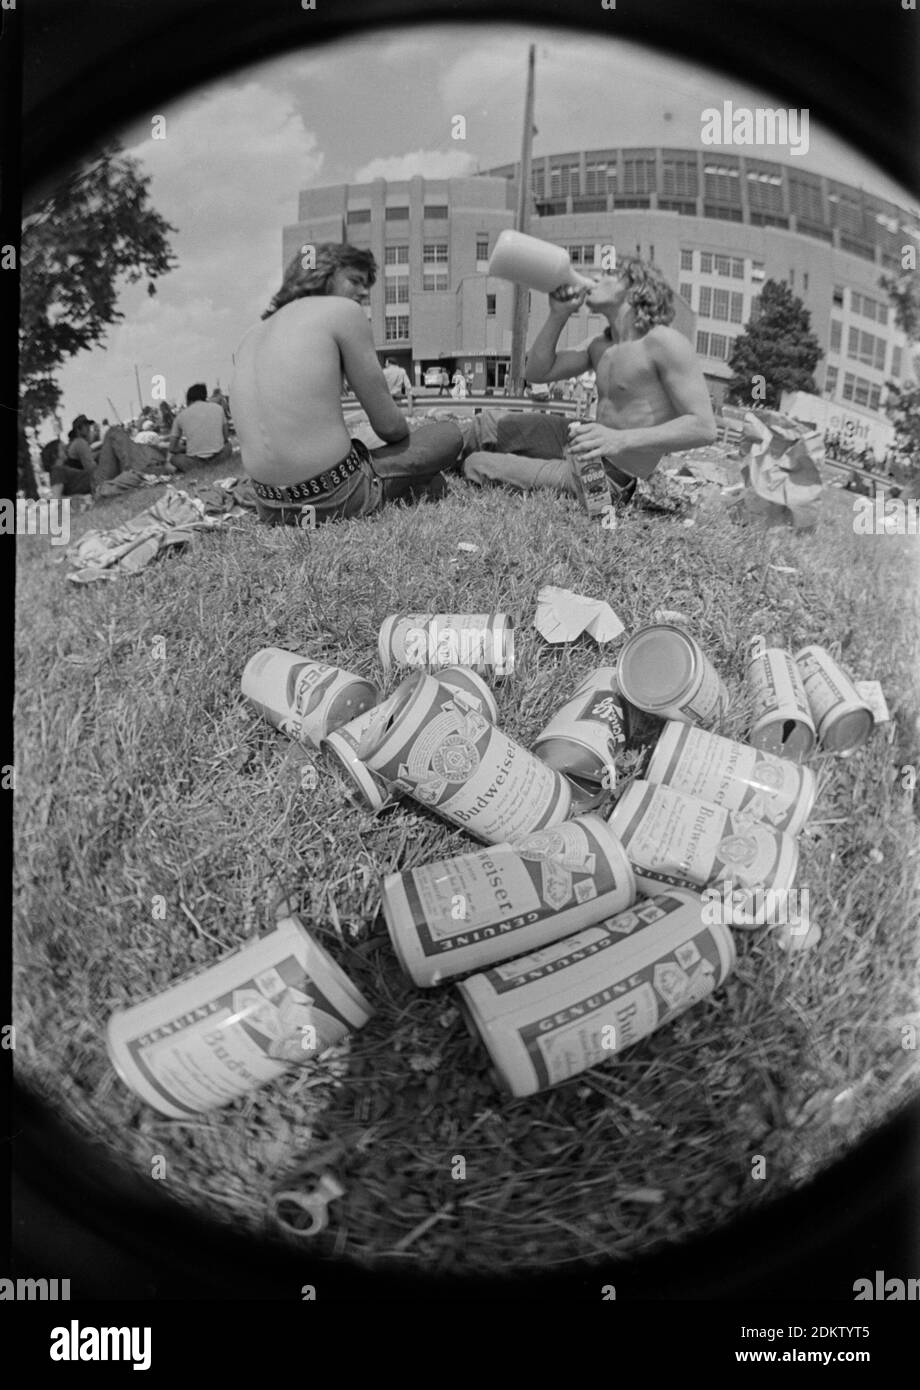 L'erba fuori dal Cleveland Stadium è disseminata di lattine di birra prima che il concerto di Rolling Stones inizi a Cleveland, Ohio, il 14 giugno 1975. Ernie Mastroianni foto. Foto Stock